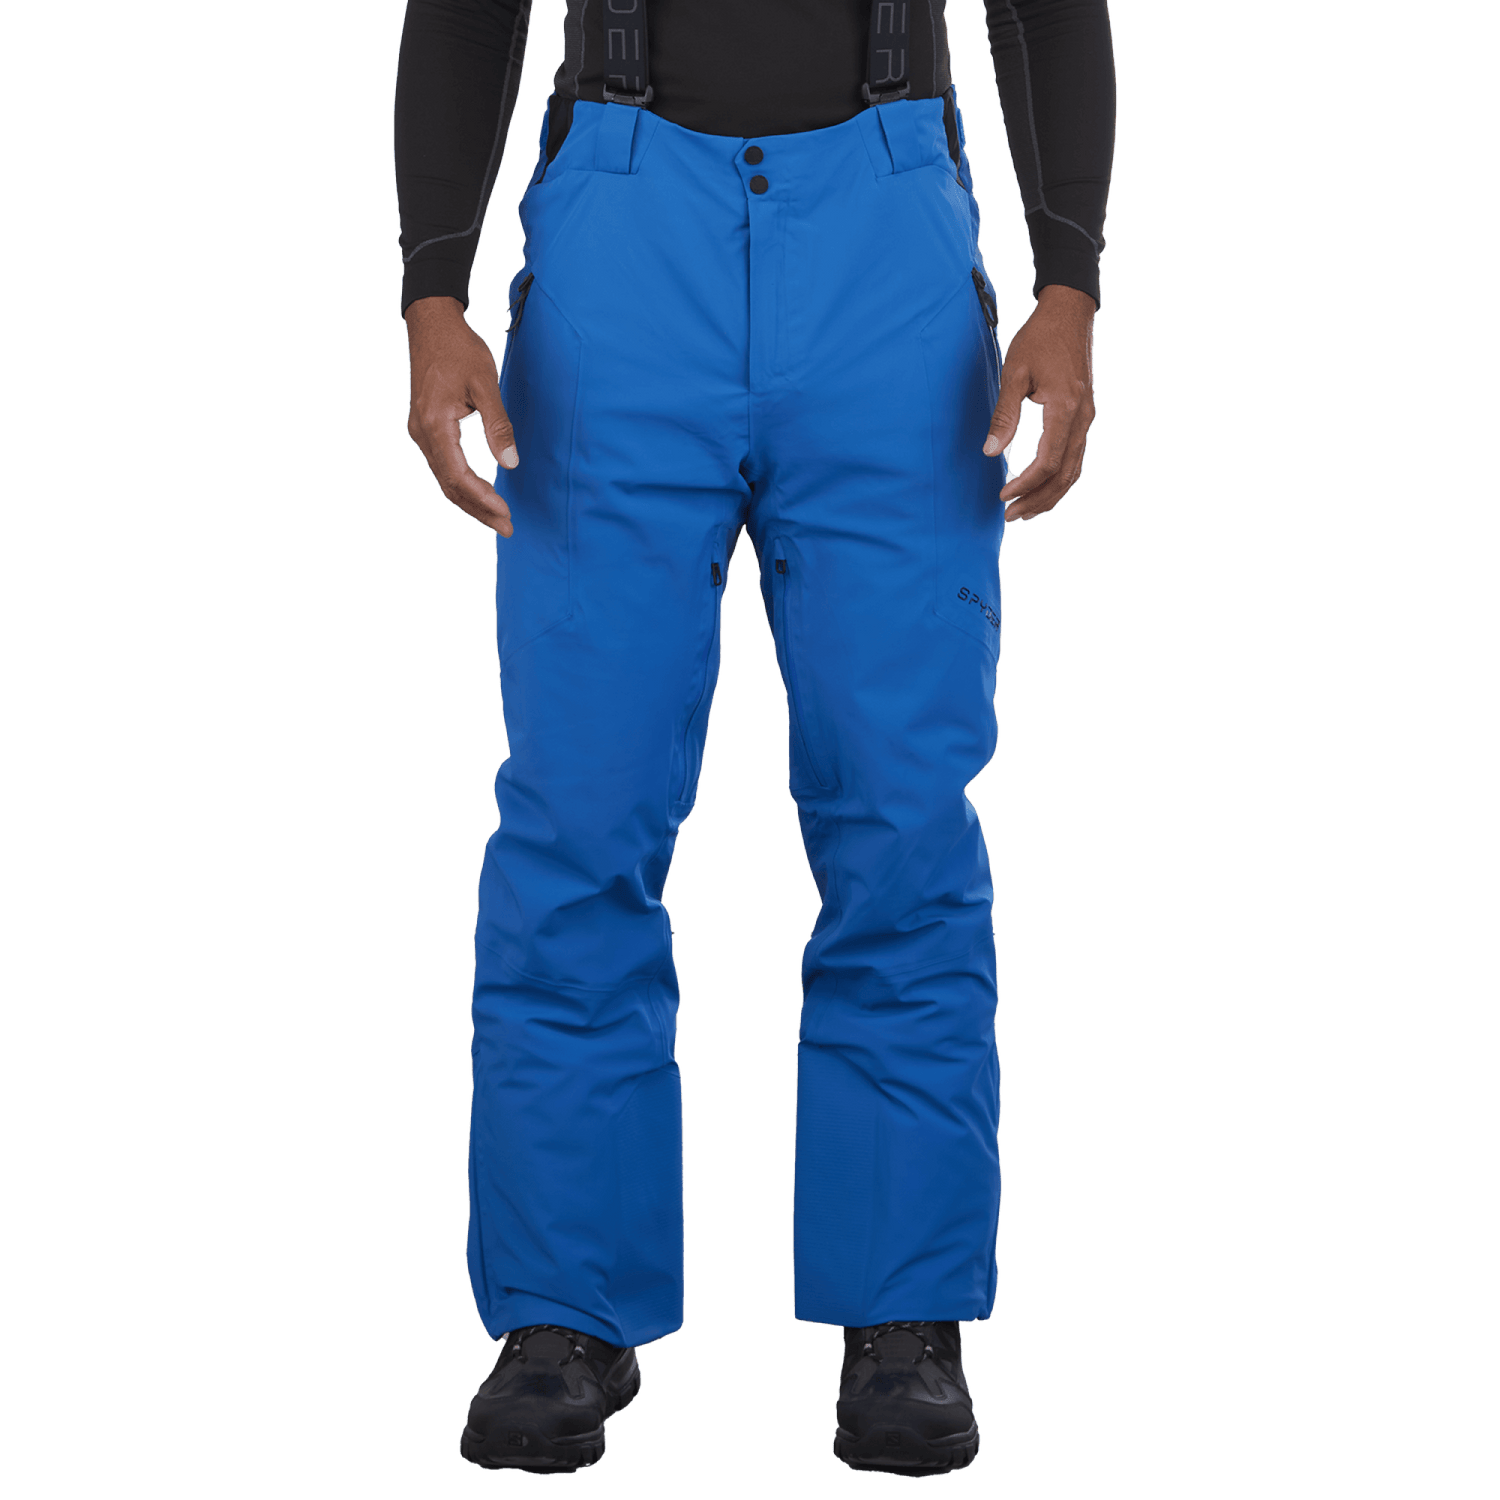 Spyder Pantalon Bormio GTX Homme – Oberson